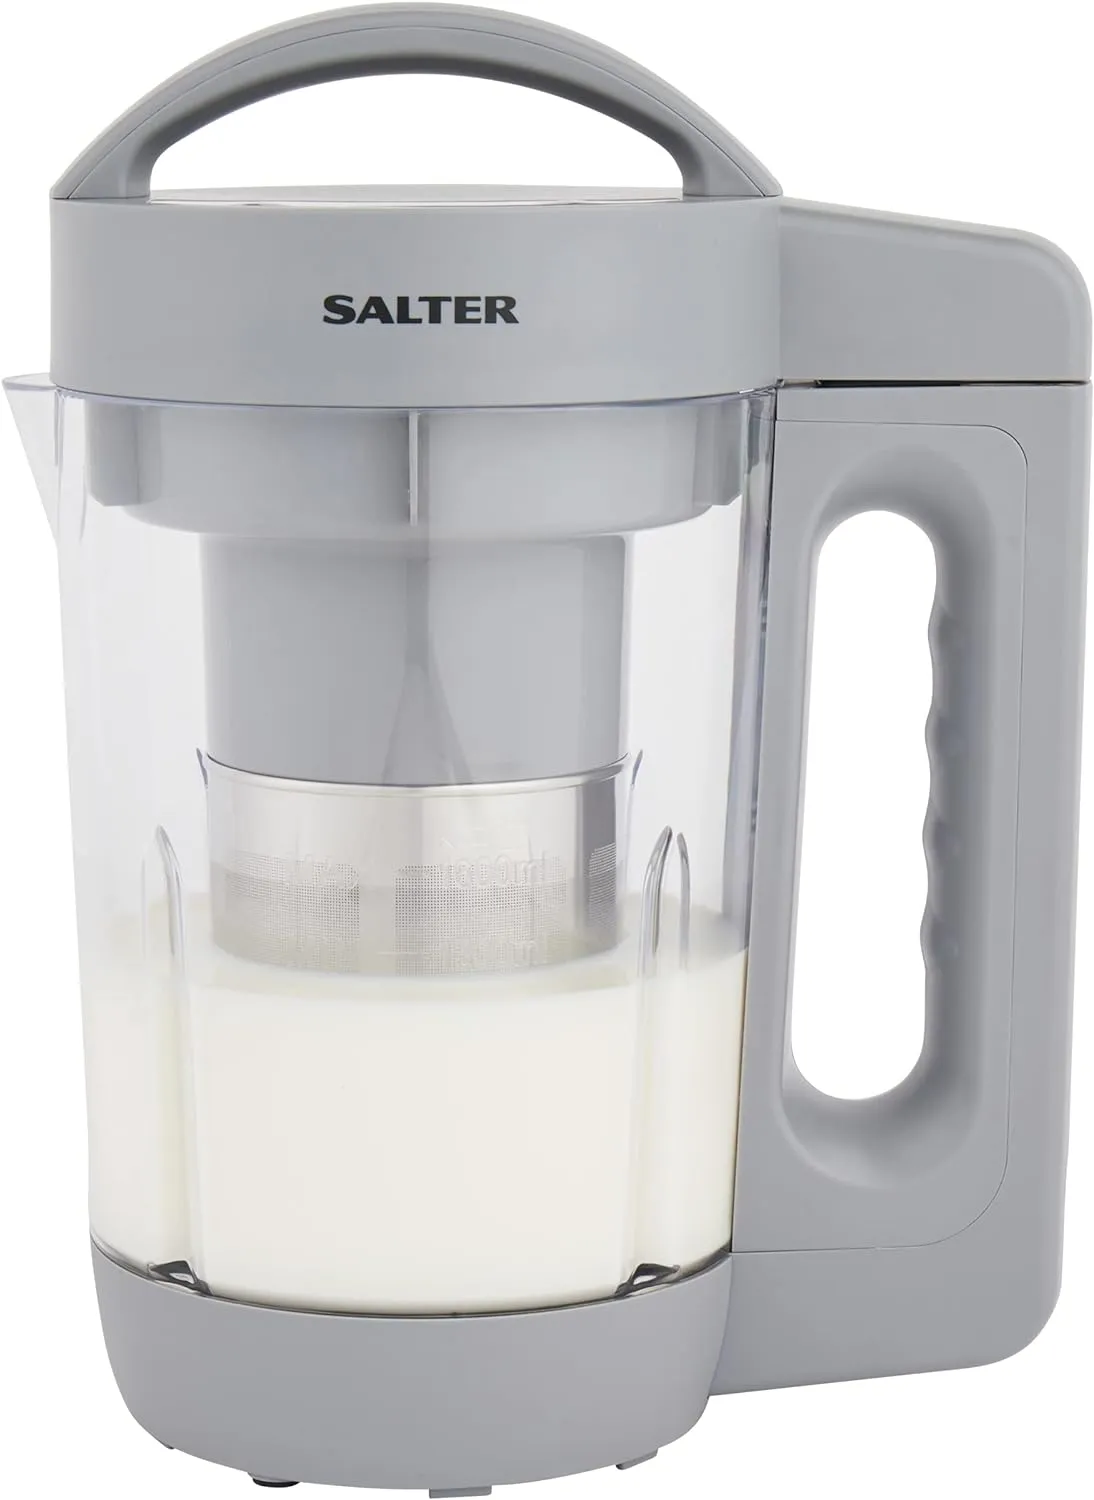 Salter EK5258 Plant Milk Maker on white background